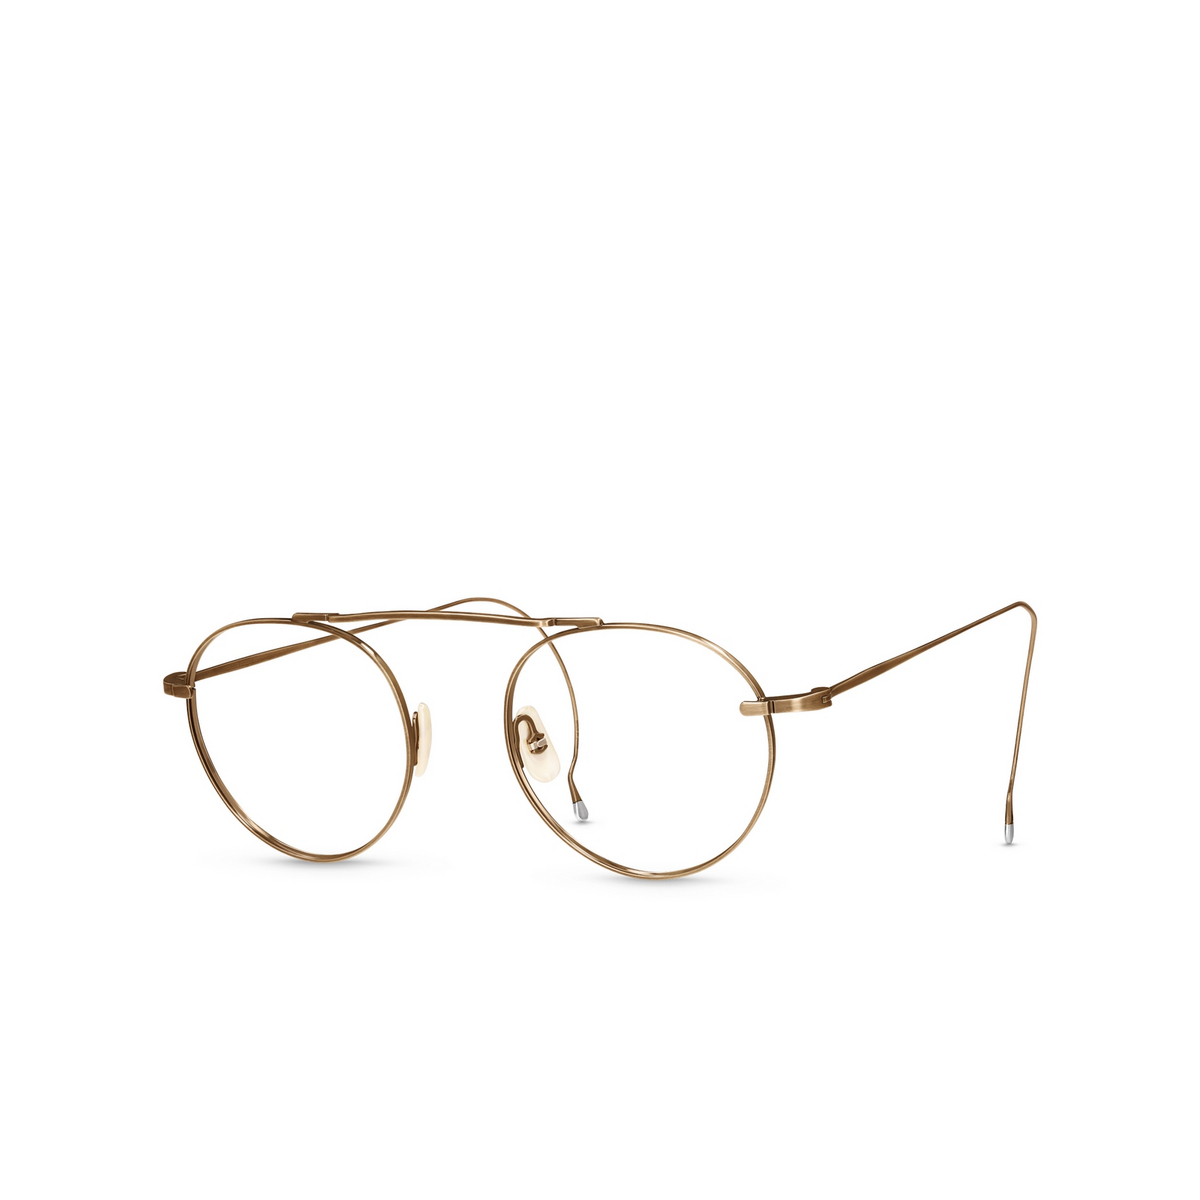 Mr. Leight REI C Eyeglasses ATG Antique Gold - three-quarters view